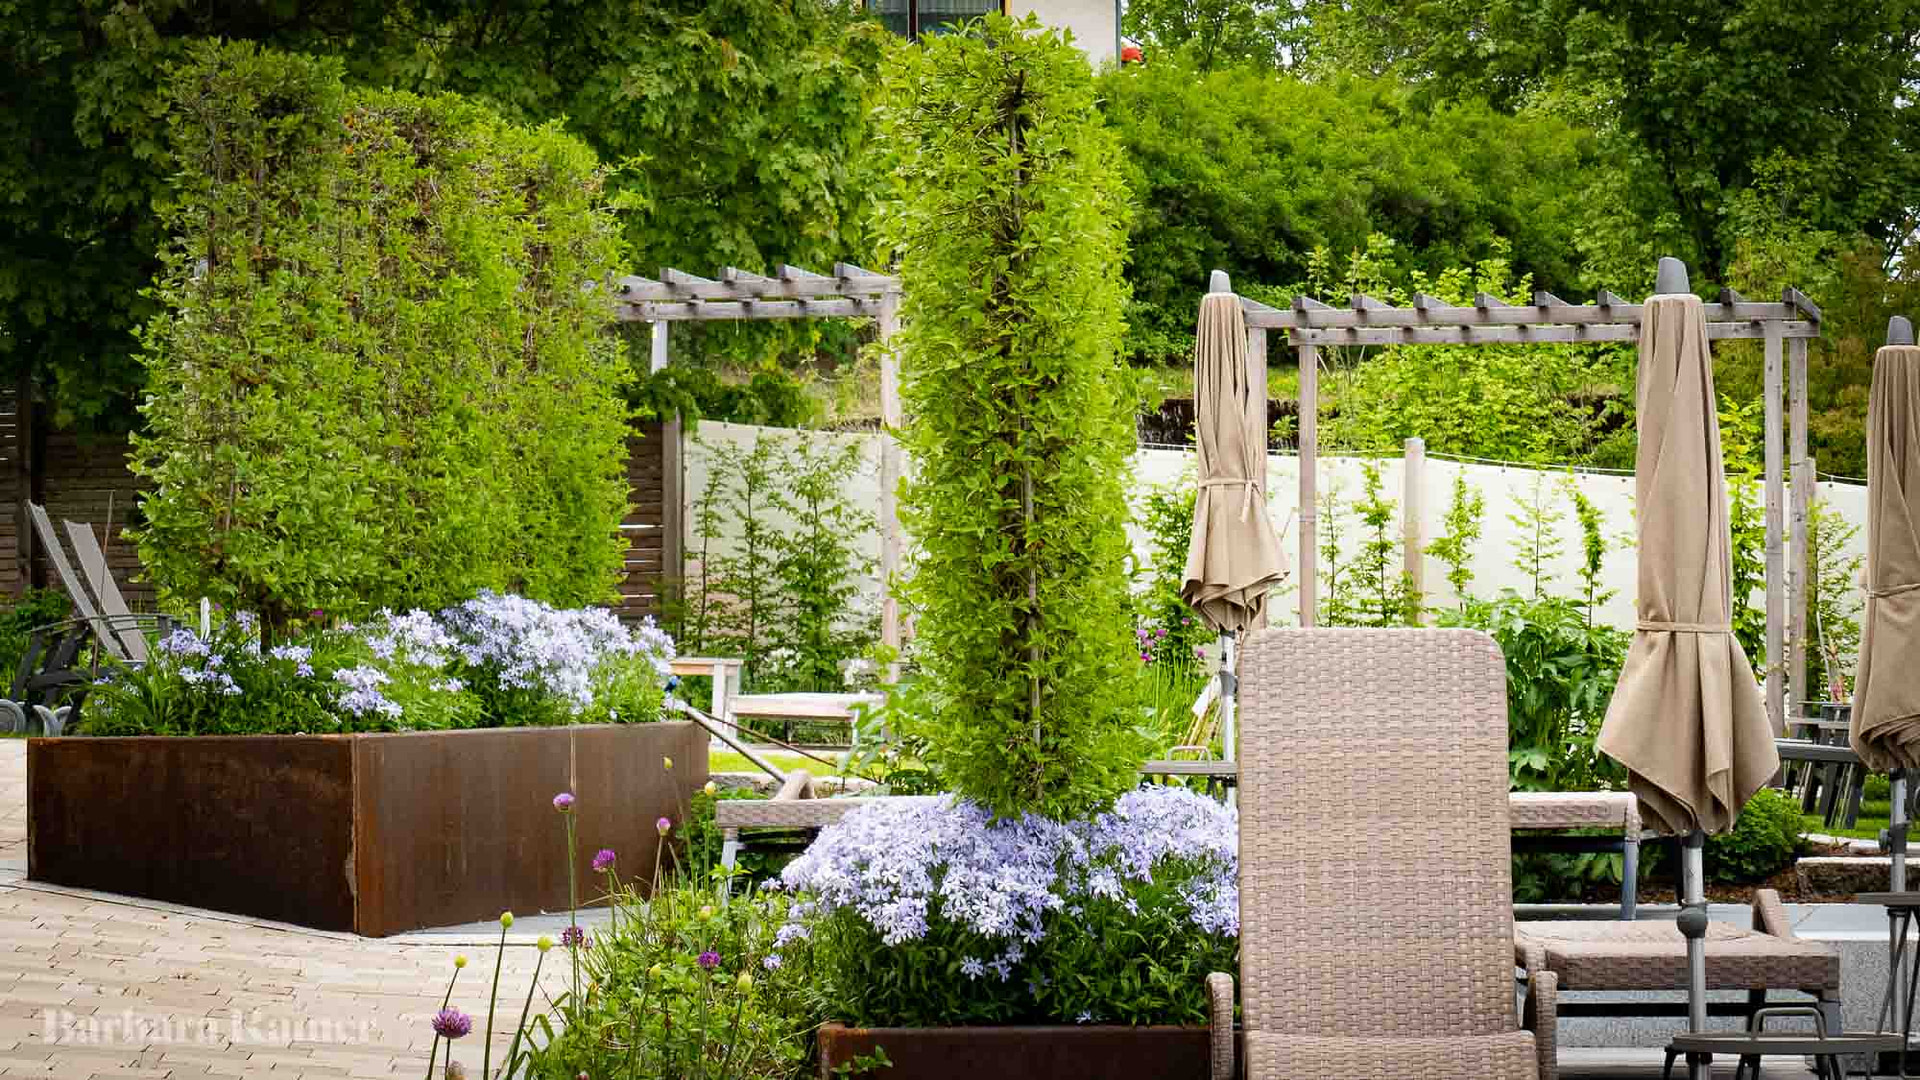 Gartendesign für einen Hotelgarten - Barbara Rainer